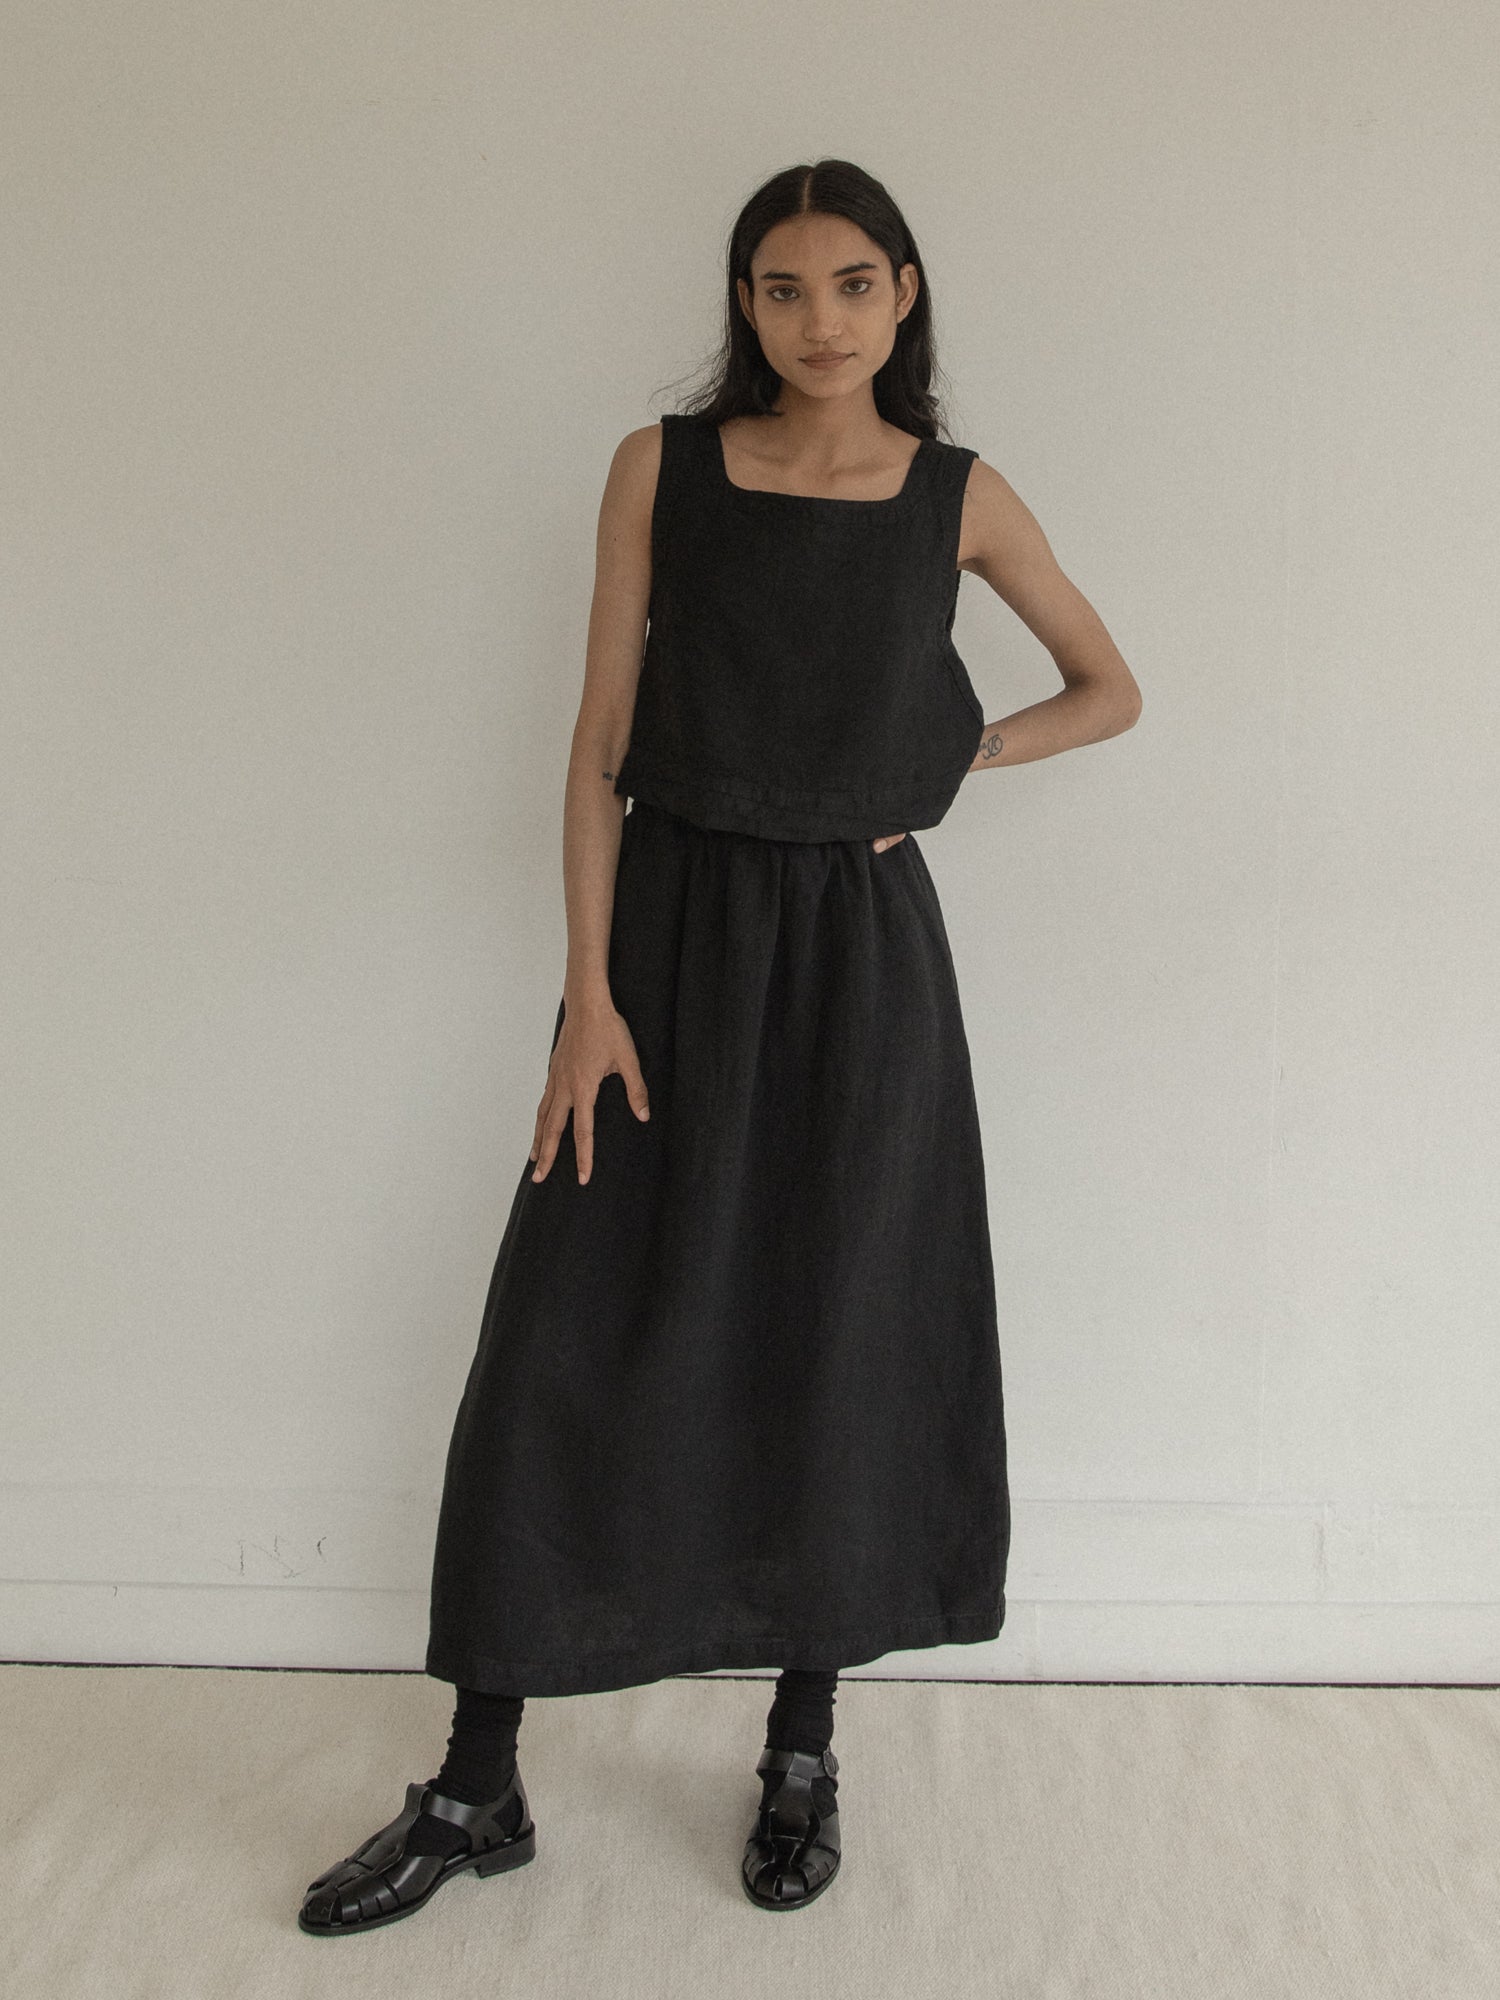 Adrie Skirt in Noir